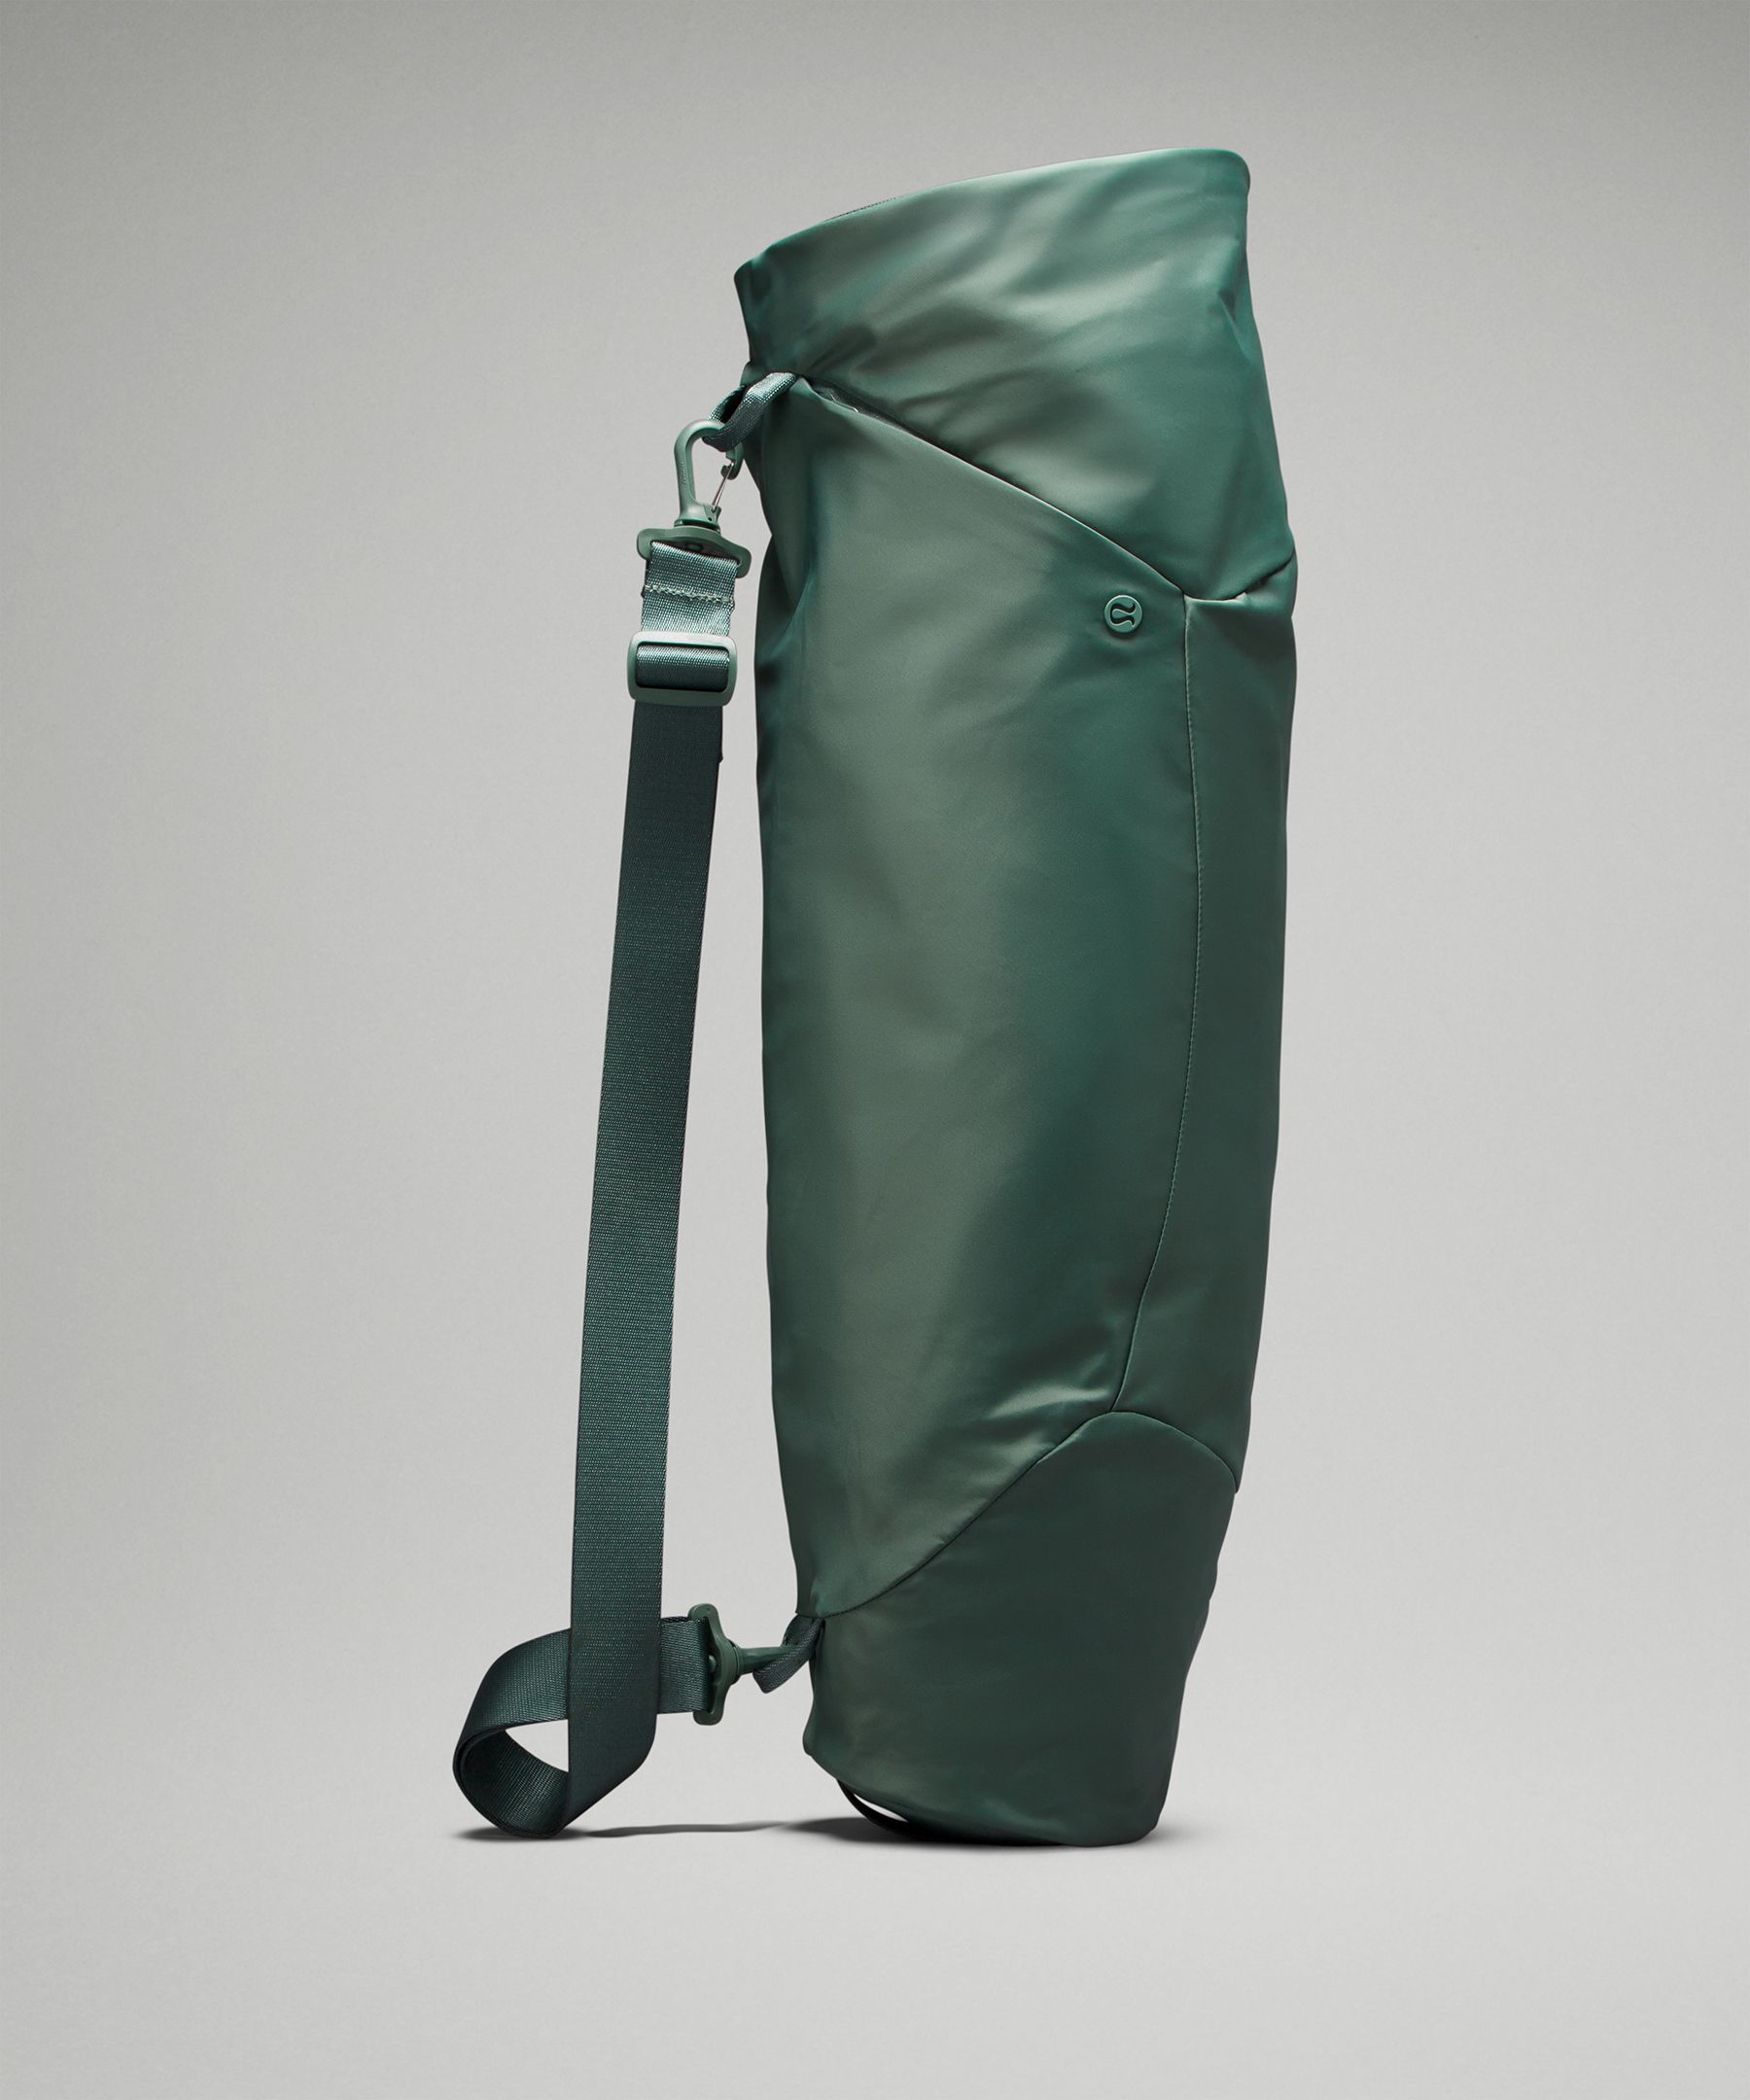 Lululemon The Yoga Mat Bag In Green